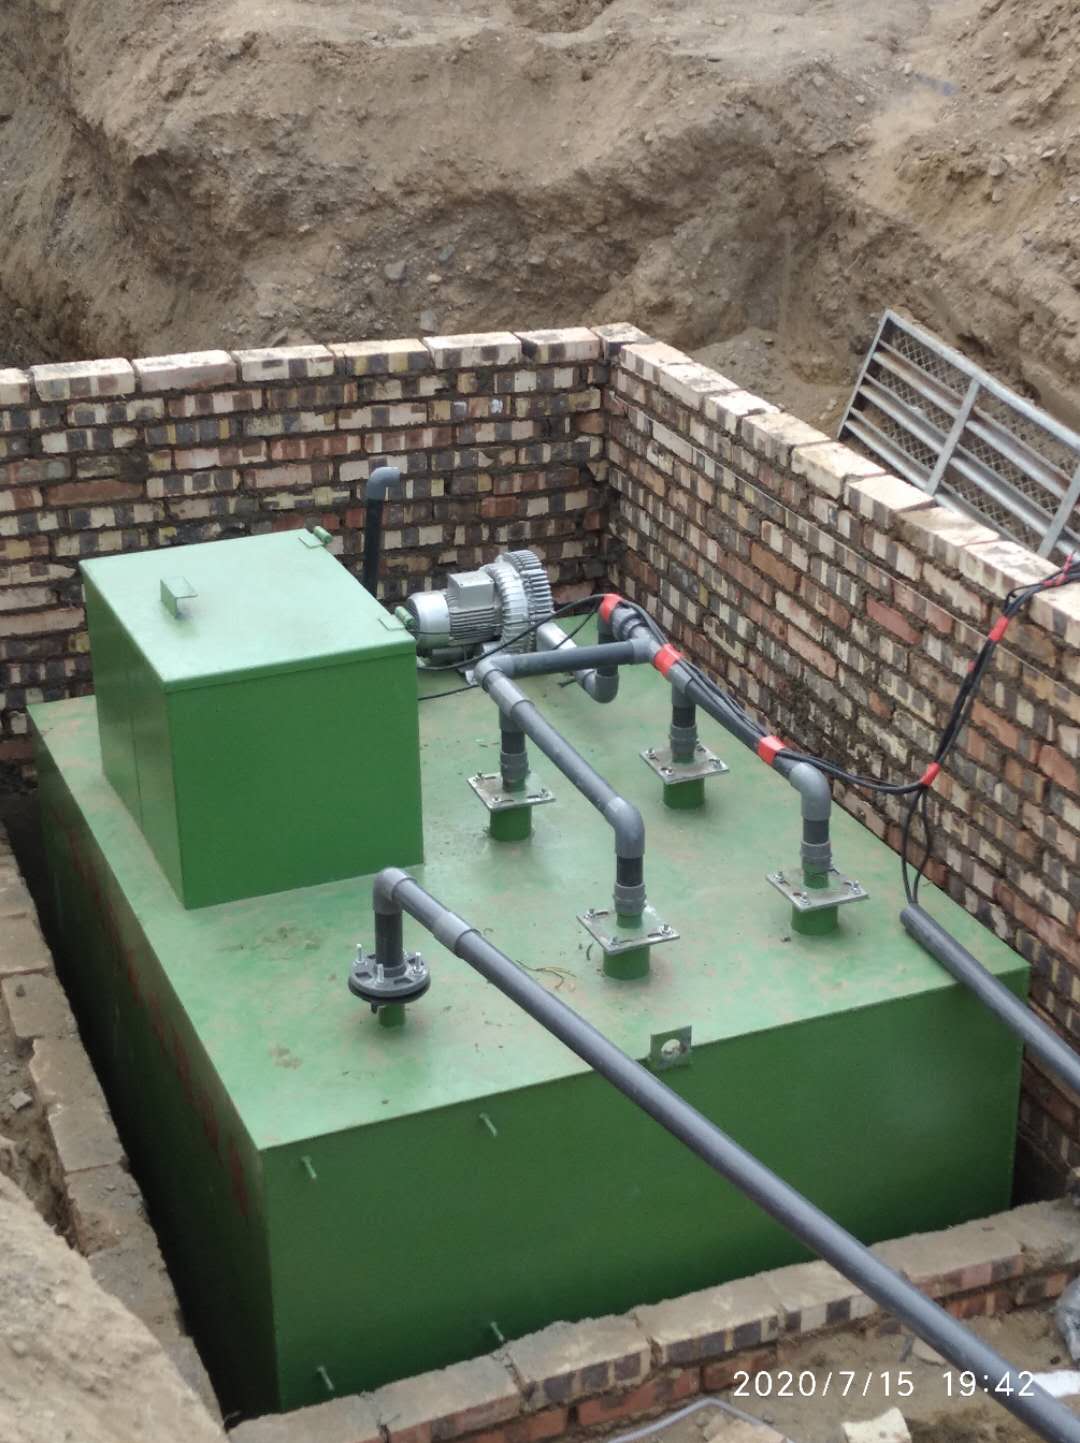 甘肅污水處理設備廠家一體化污水處理設備